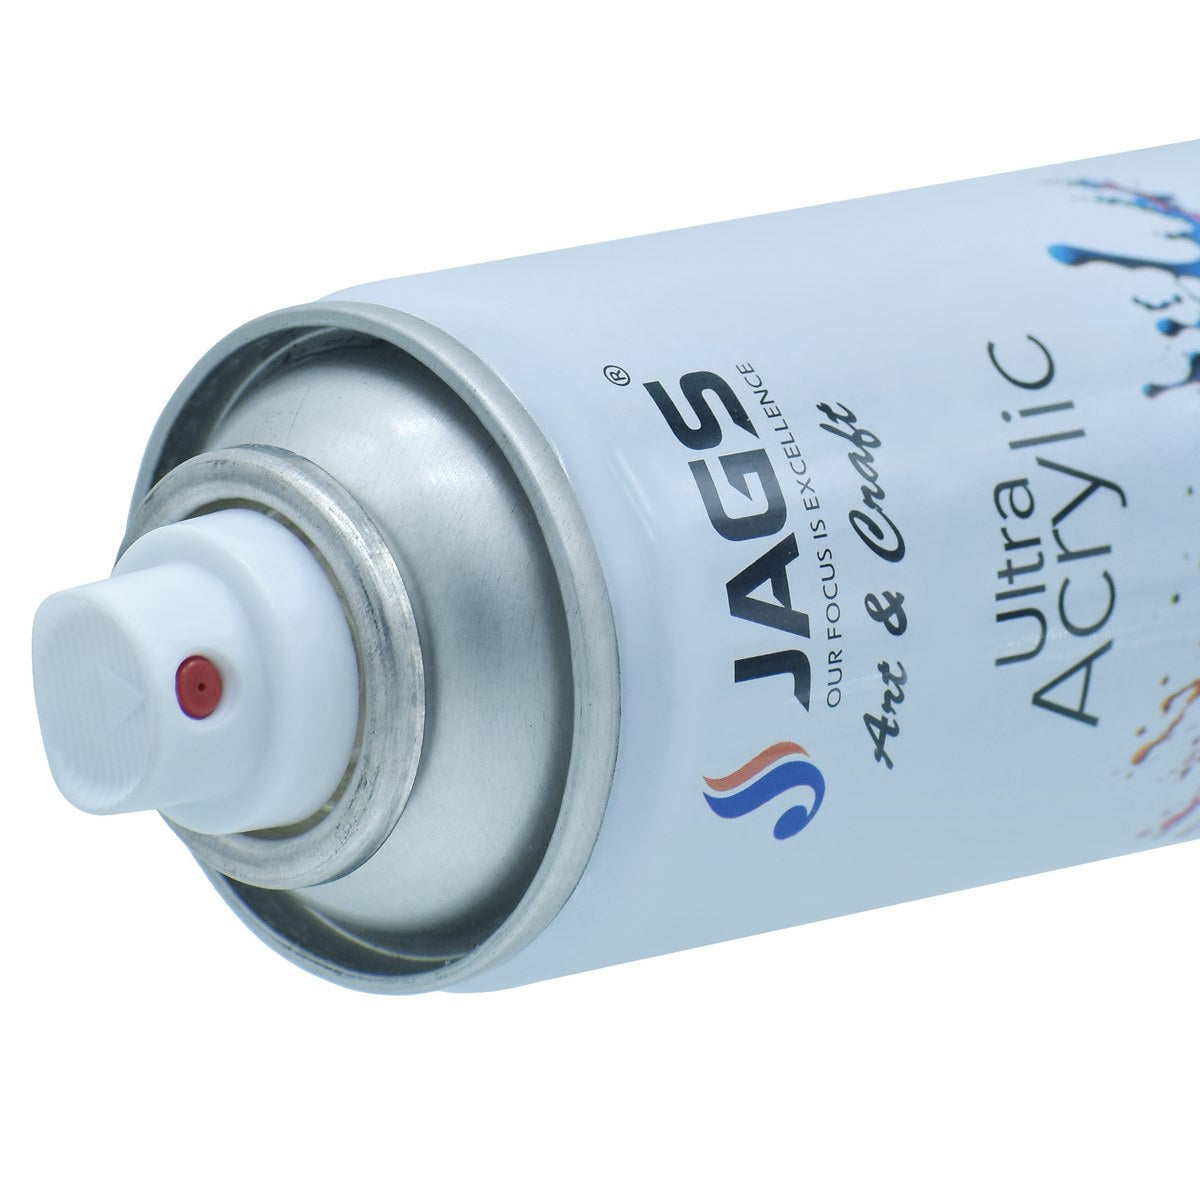 jags-mumbai Paint & Colours Crystal Clear Brilliance: Spray Ultra Acrylic 150ml Clear Glossy - Contain 1 Unit